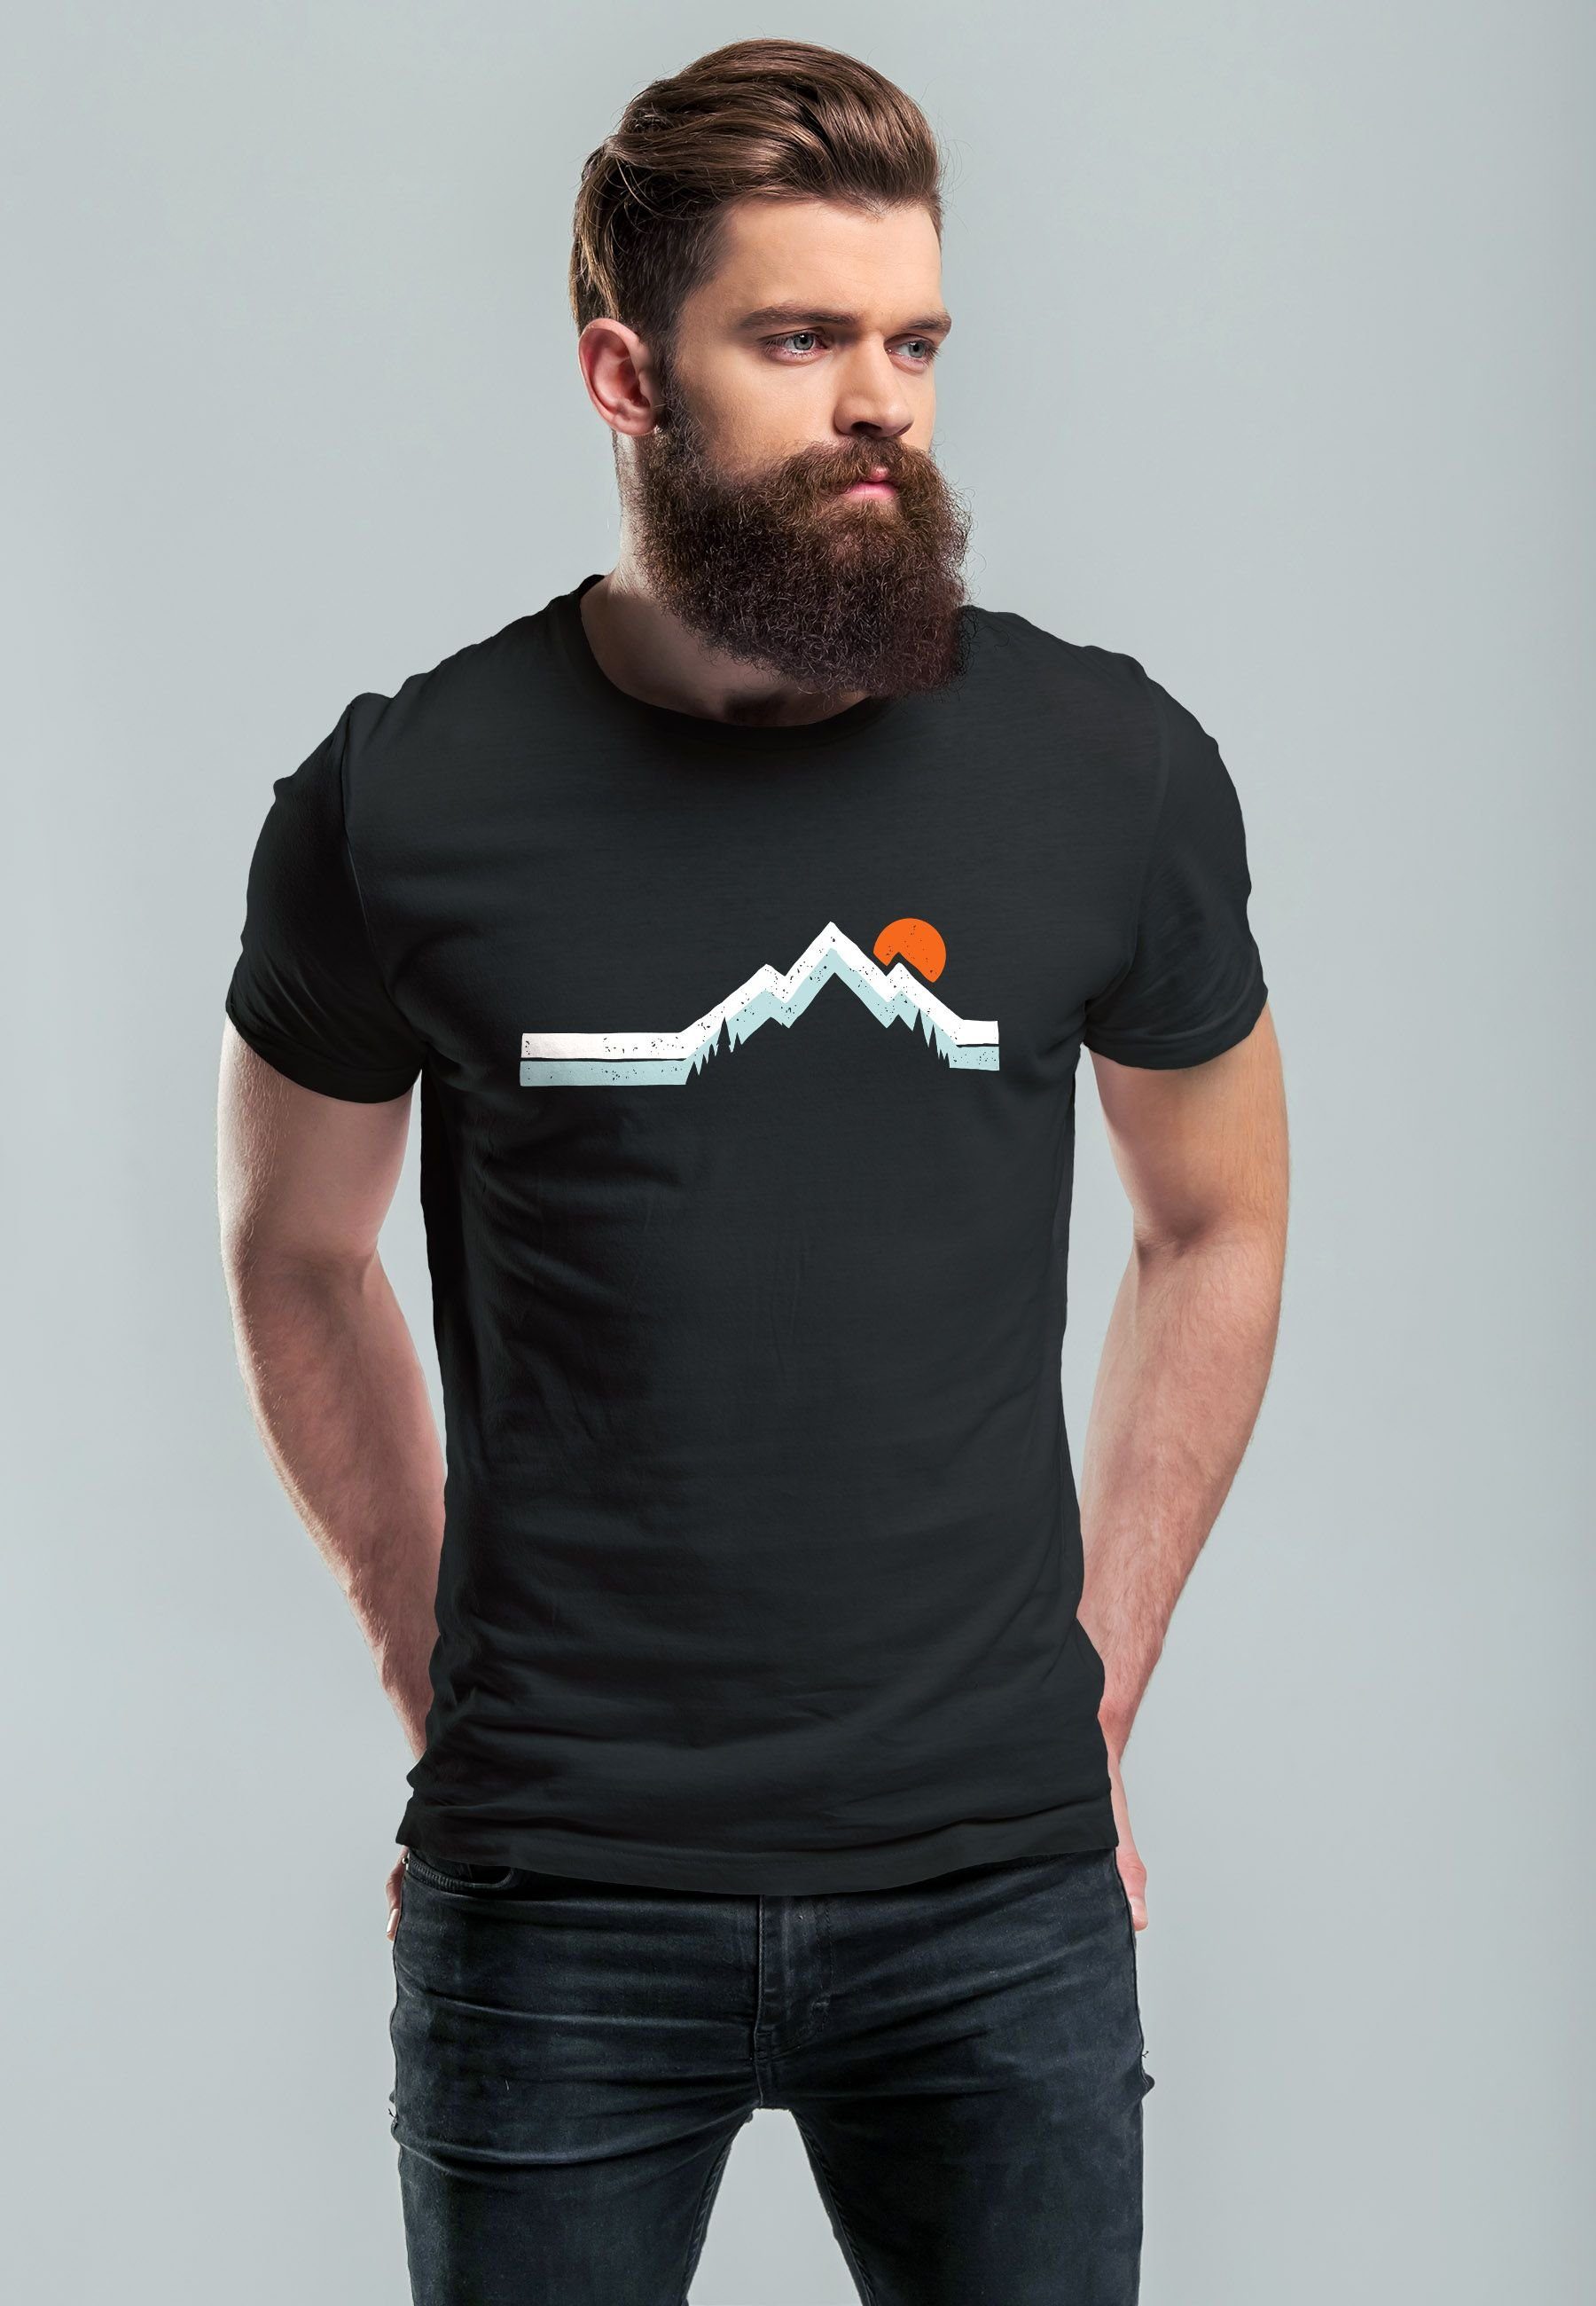 Neverless T-Shirt Aufdruck mit schwarz Outdoor Print-Shirt Wandern mit Herren Fash Print Printshirt Natur Berg